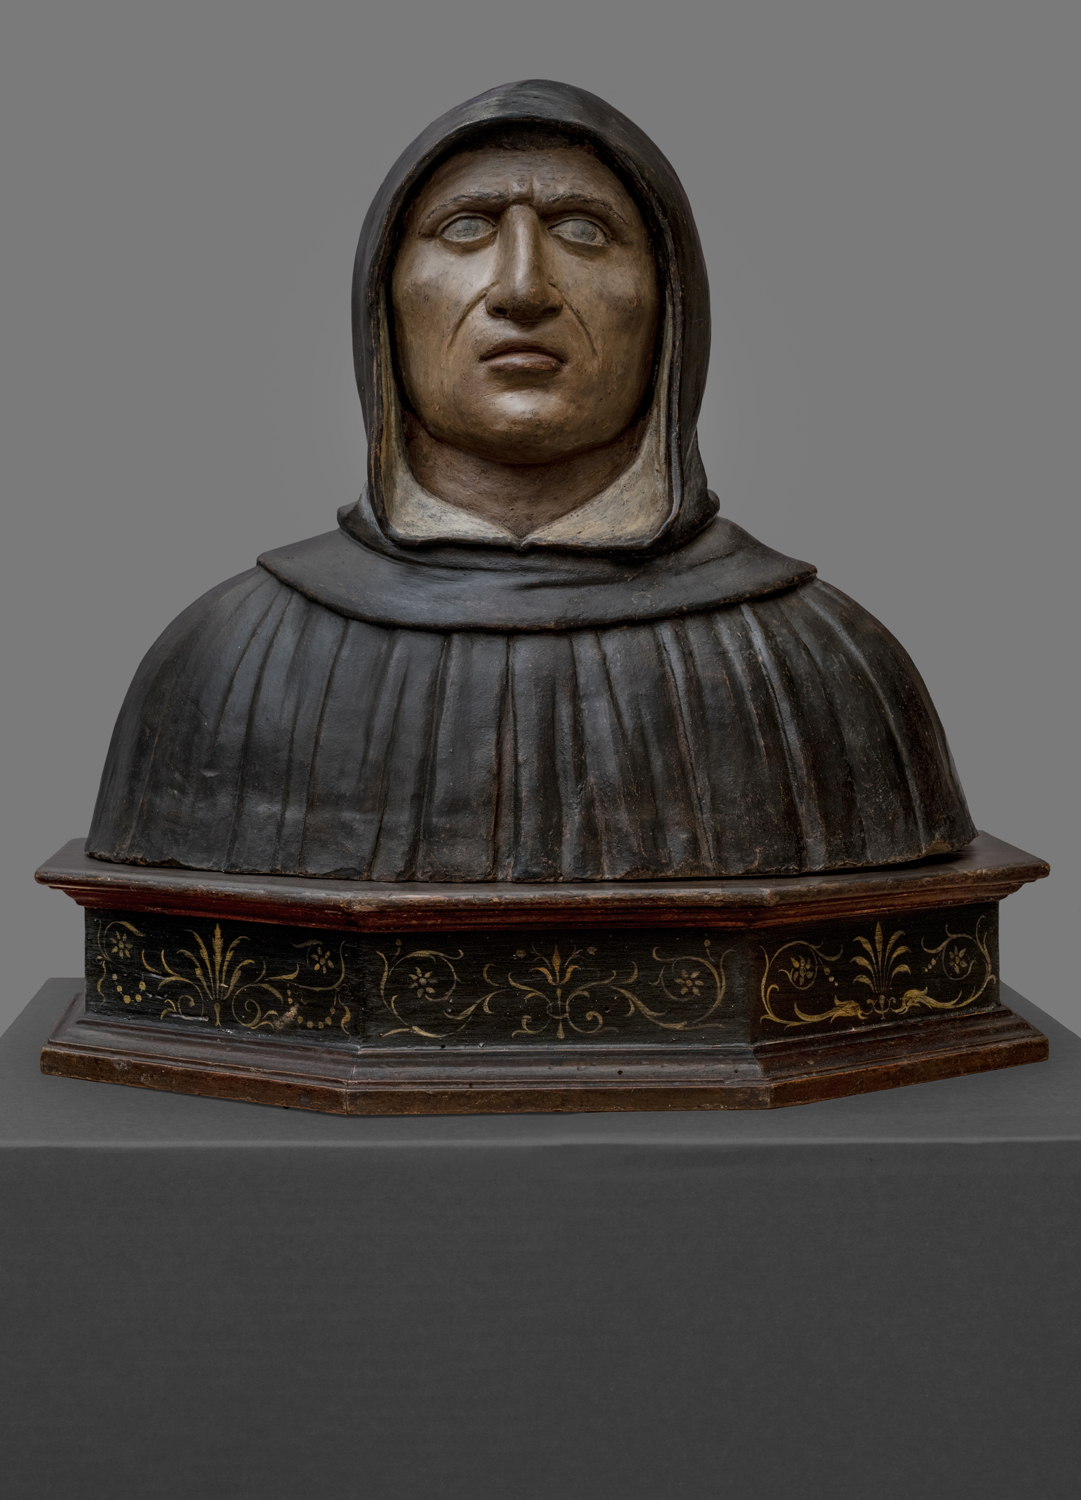 Il busto di Gerolamo Savonarola, attribuito a Marco della Robbia, esposto nel Museo di San Marco a Firenze